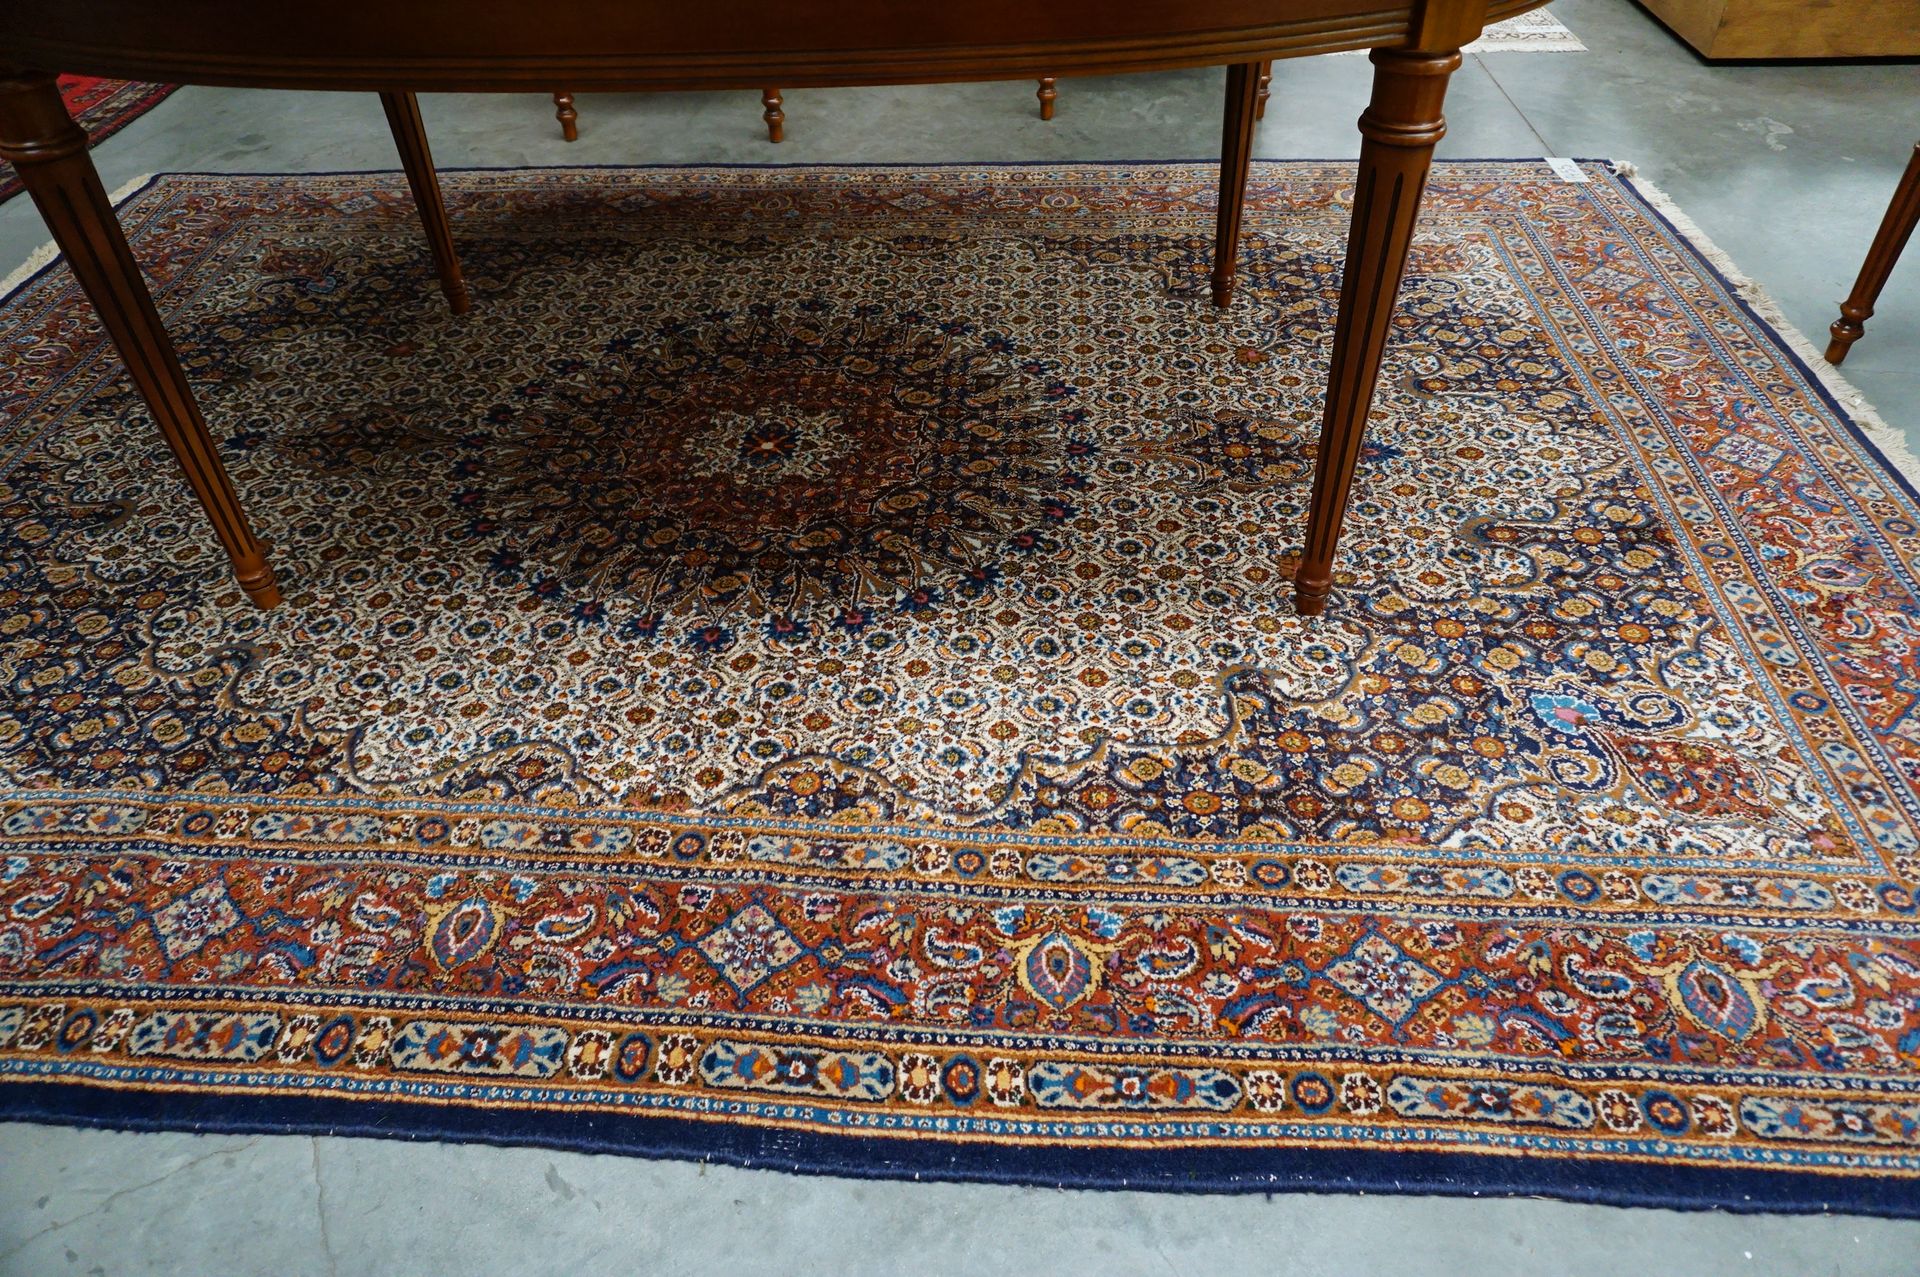 Null Iranischer Teppich - 2.90 x 2.01